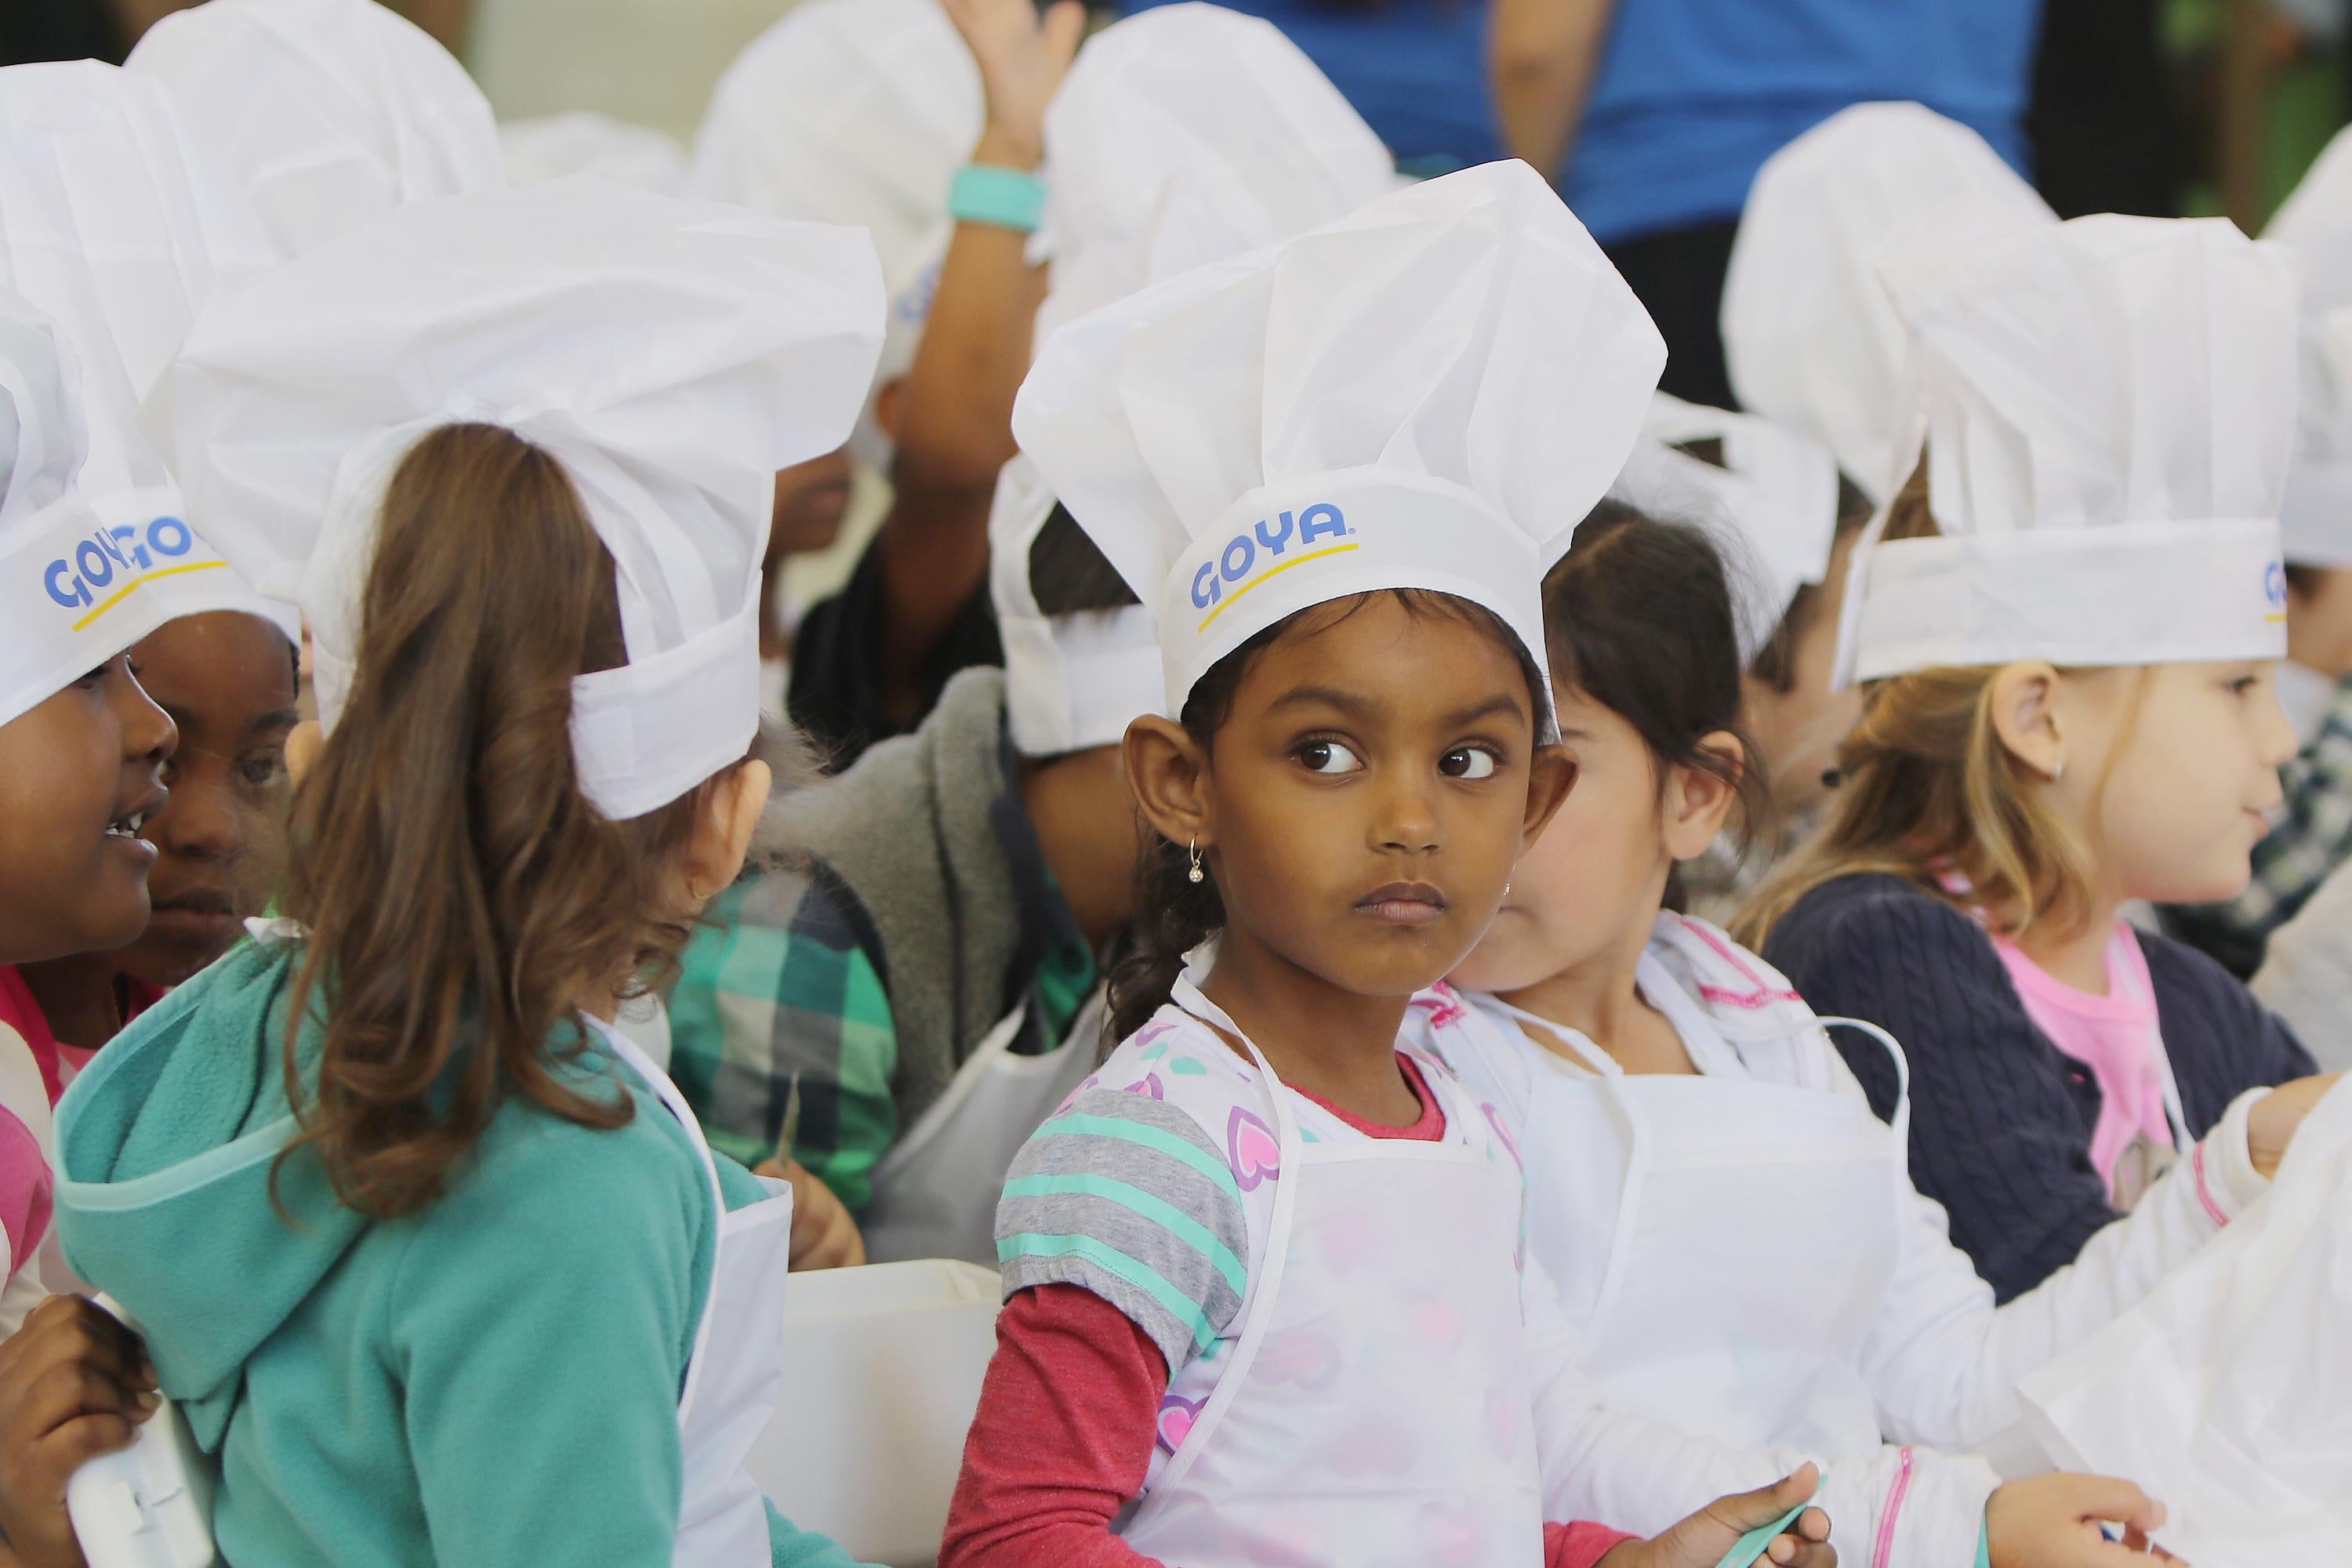 Children wearing chefs' hats.